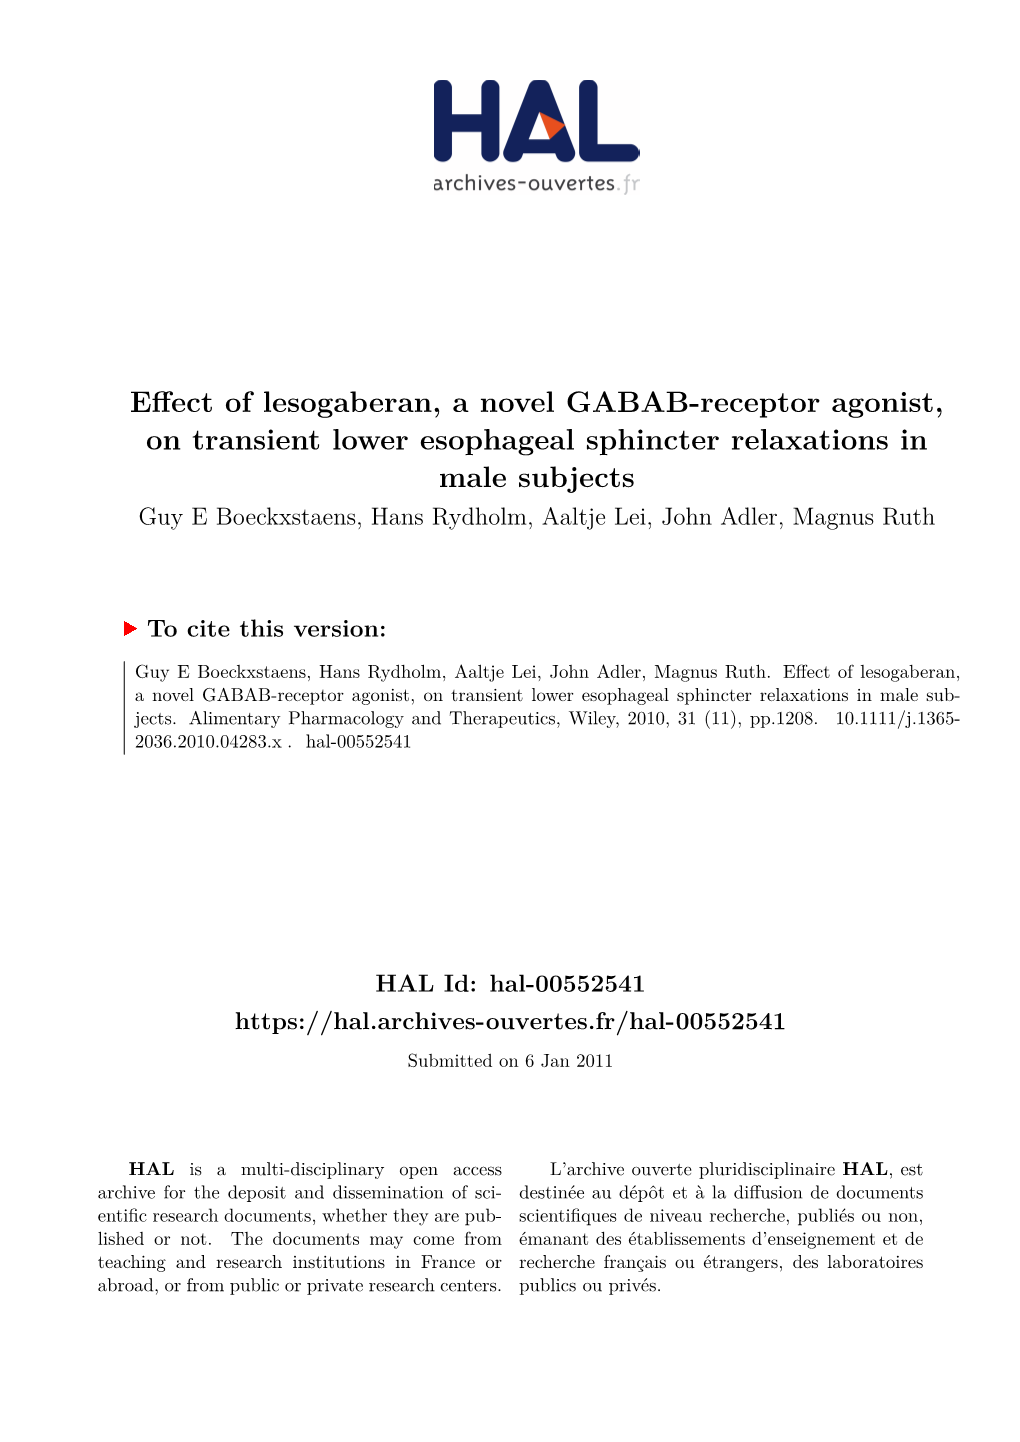 Effect of Lesogaberan, a Novel GABAB-Receptor Agonist, On